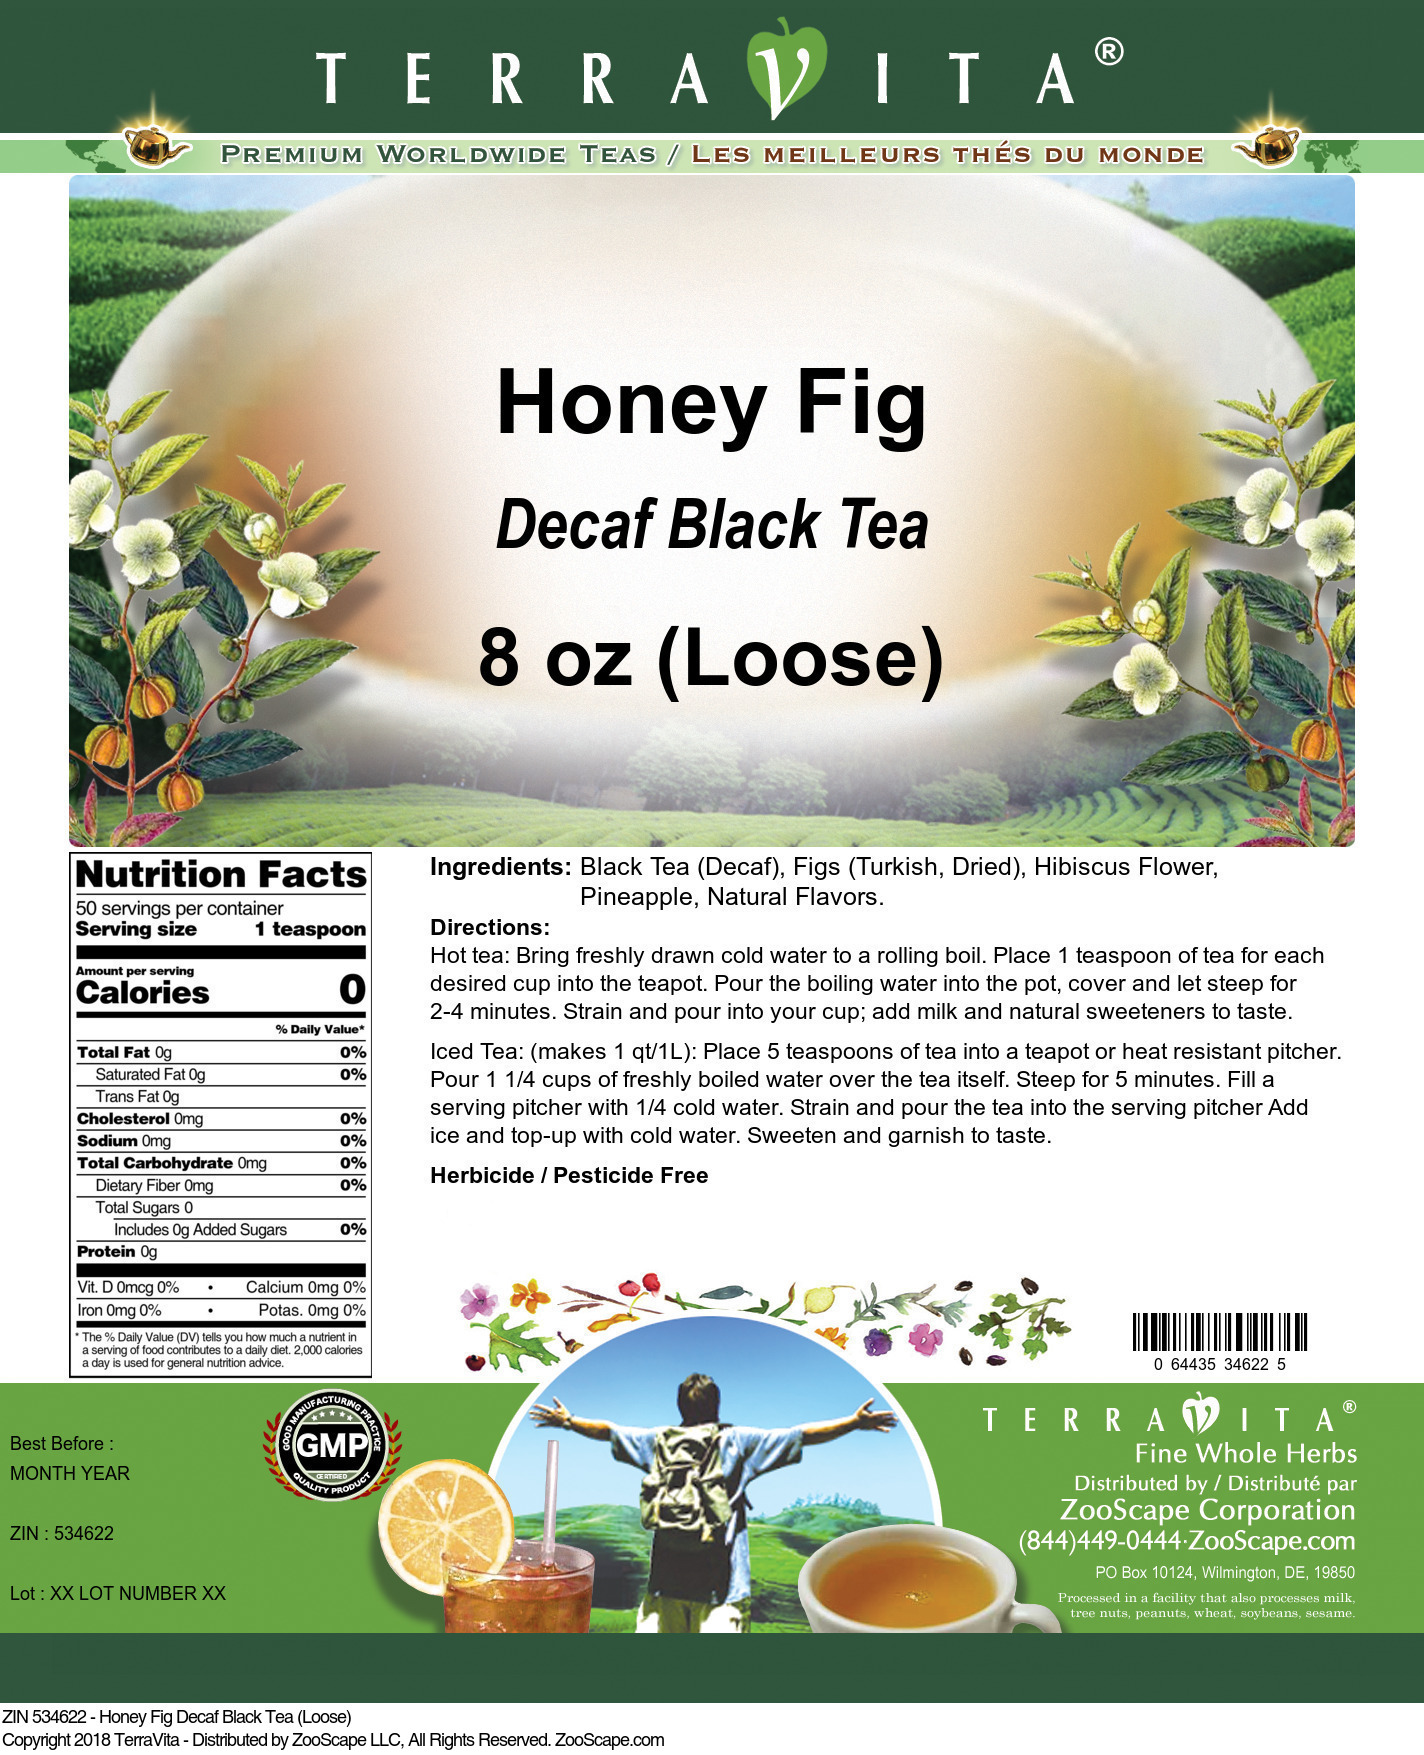 Honey Fig Decaf Black Tea (Loose) - Label